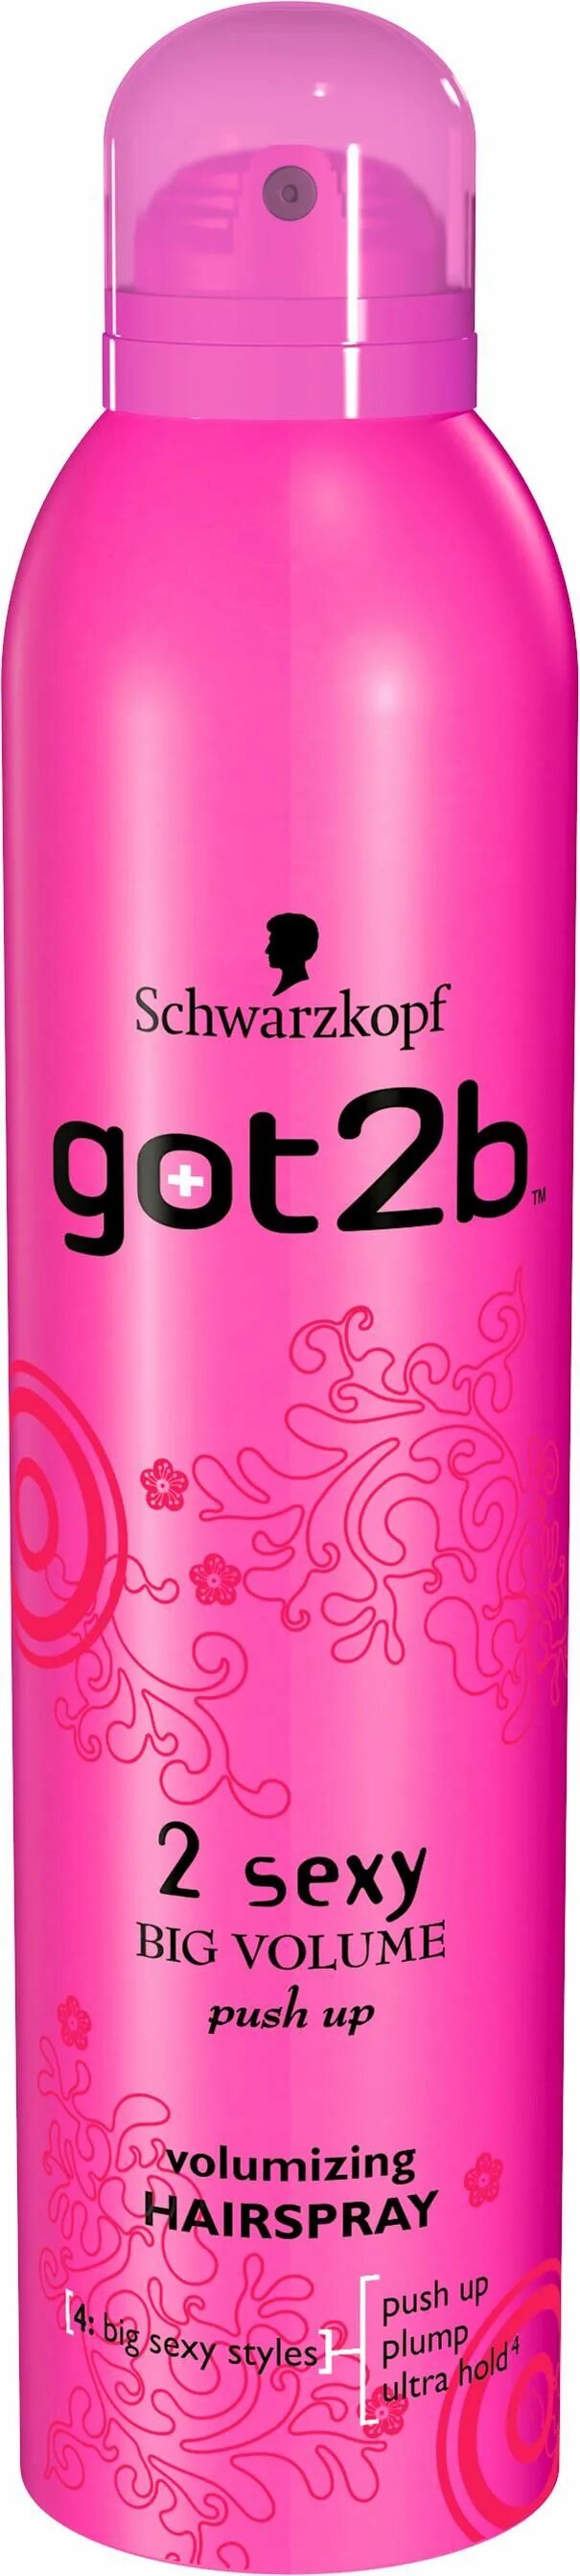 Лак Schwarzkopf got2b для волос Мегамания 300 мл. Sch. Got2b лак для волос Мегамания супер-объем лифтинг-эффект 300 мл.. Шварцкопф got2b лак. Лак для волос Schwarzkopf got2b.